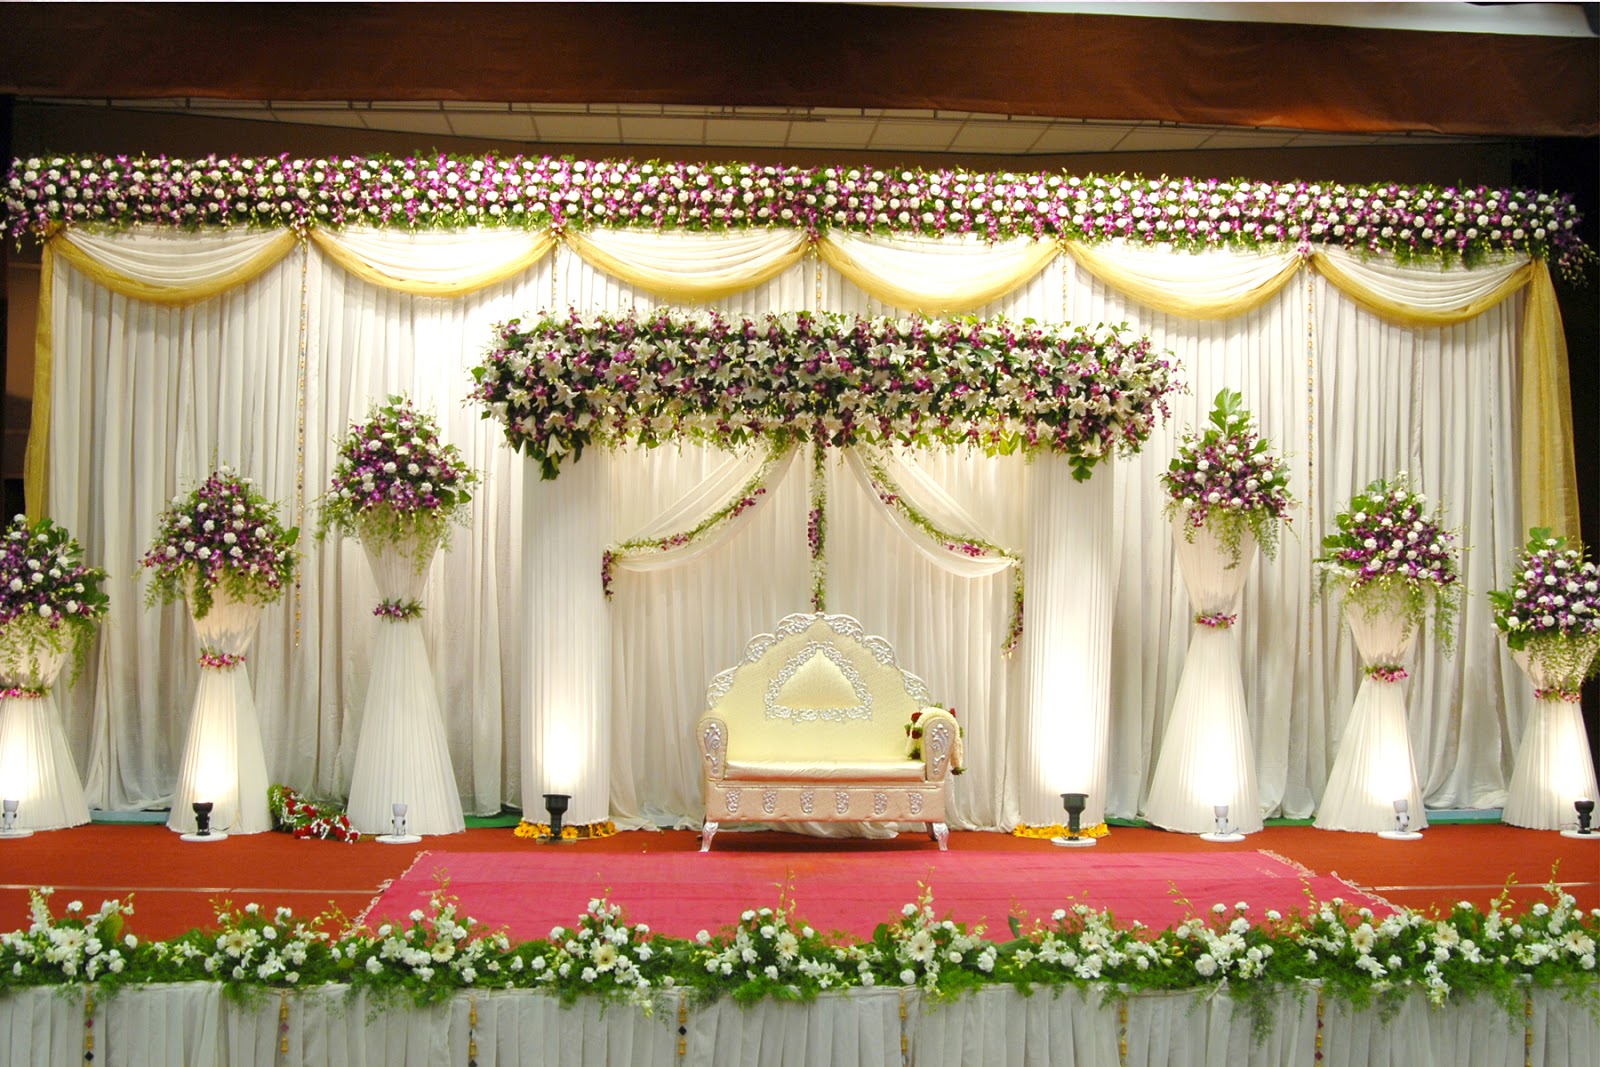 Wedding Decoration For Church Marriagedecoration wedding decoration for church|guidedecor.com